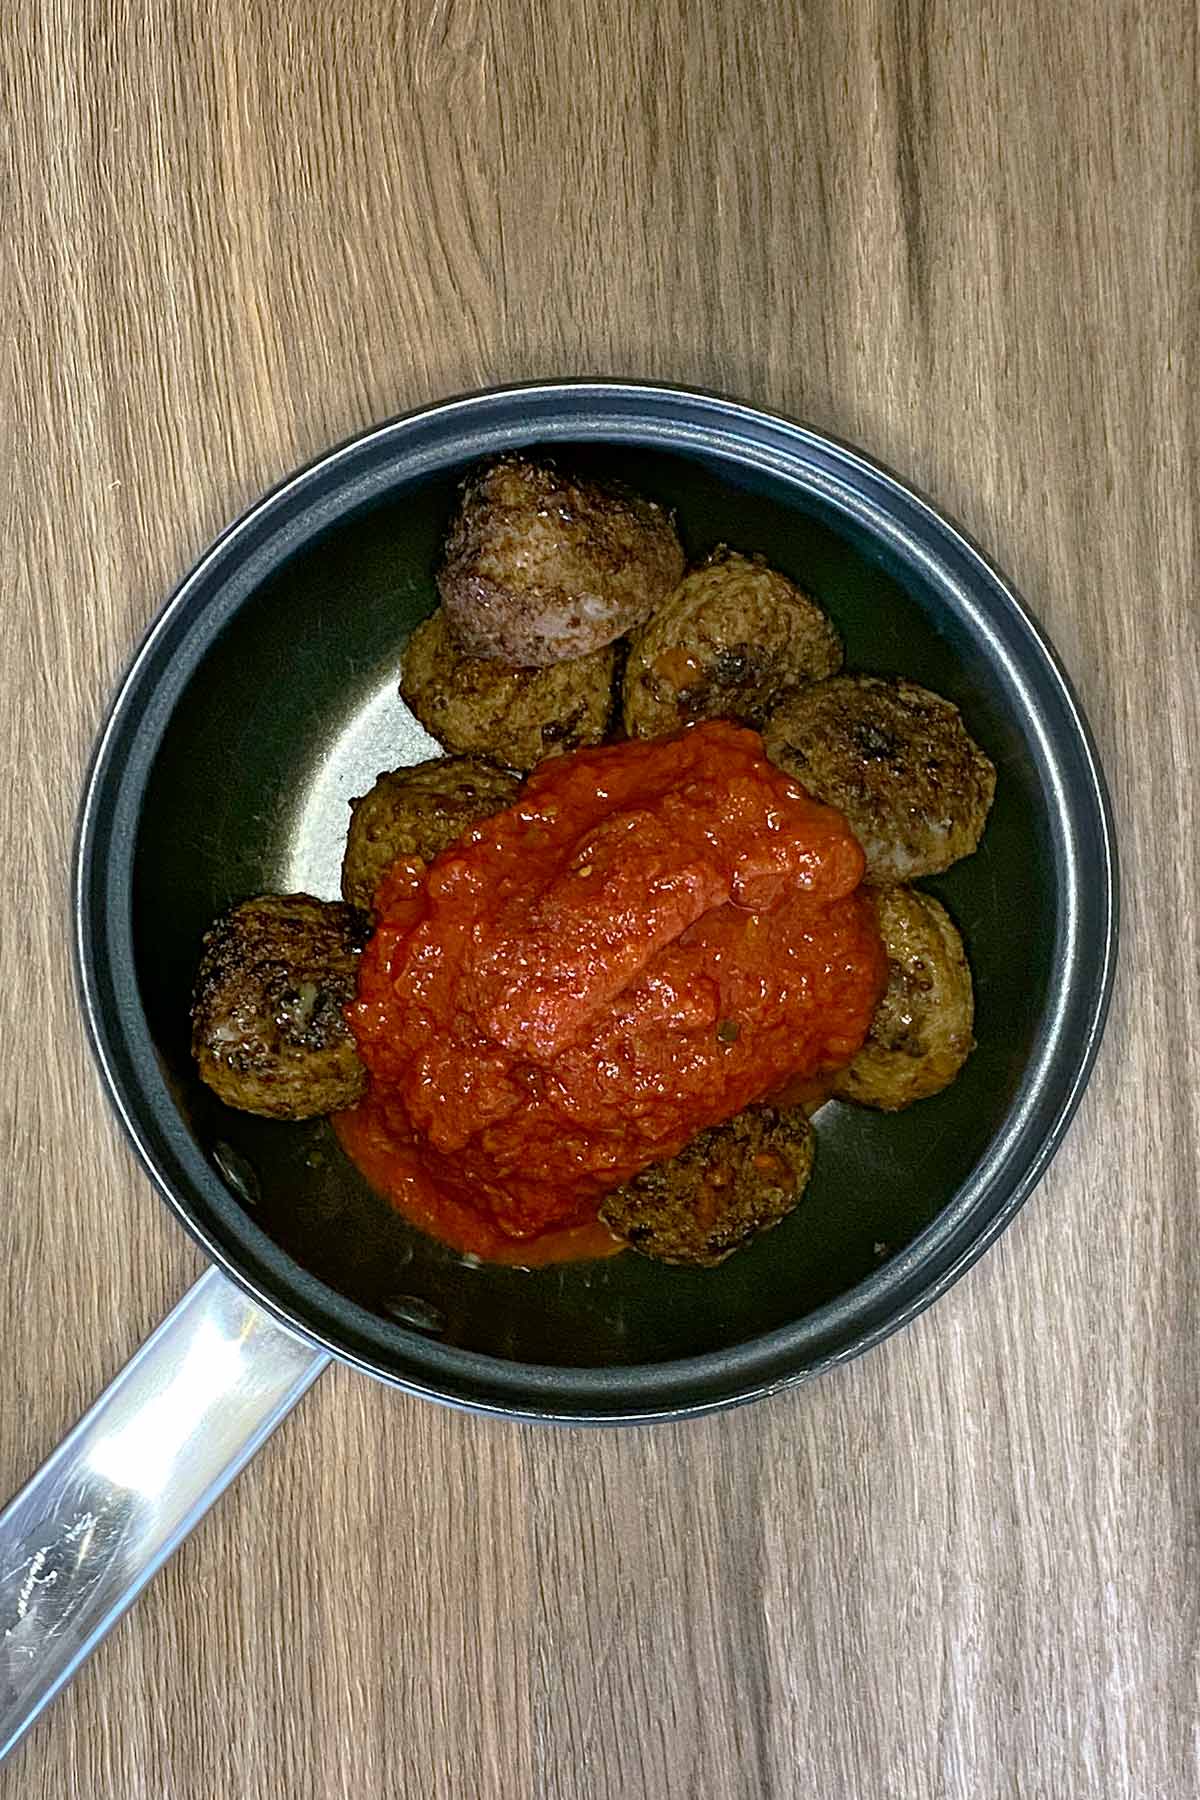 A saucepan containing meatballs and marinara sauce.